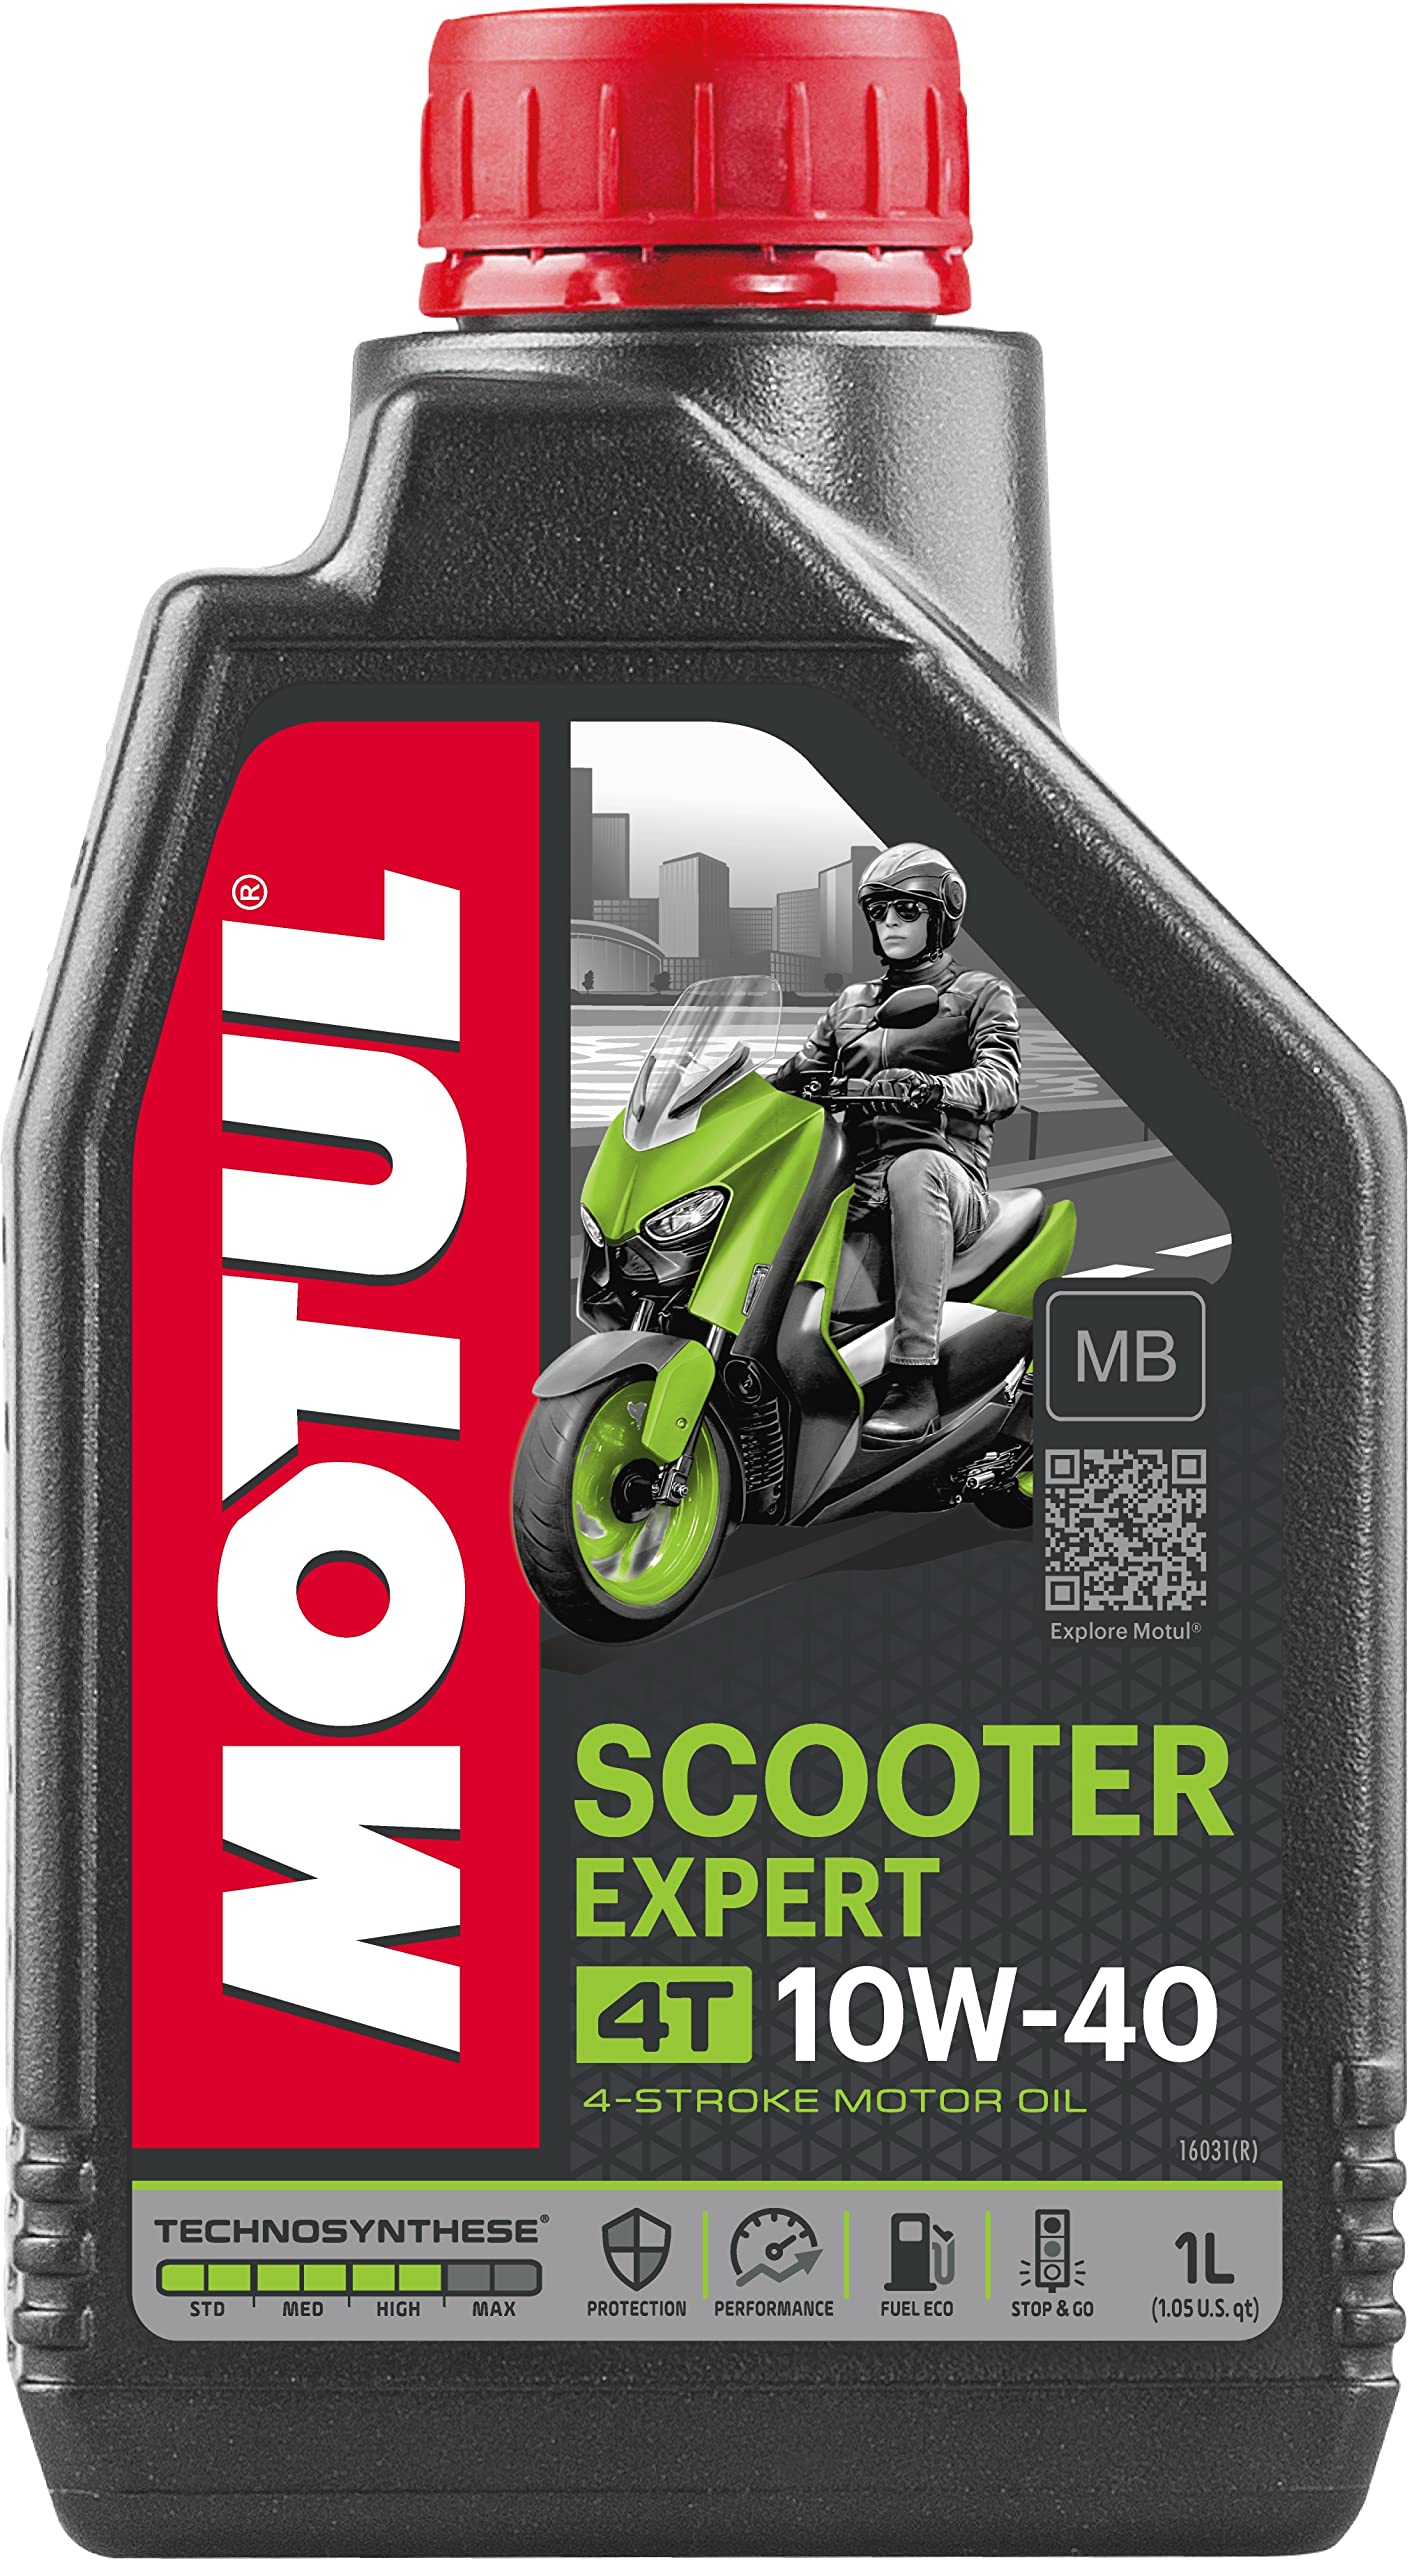 Motul Scooter Expert 4T 10W40 MB von Motul